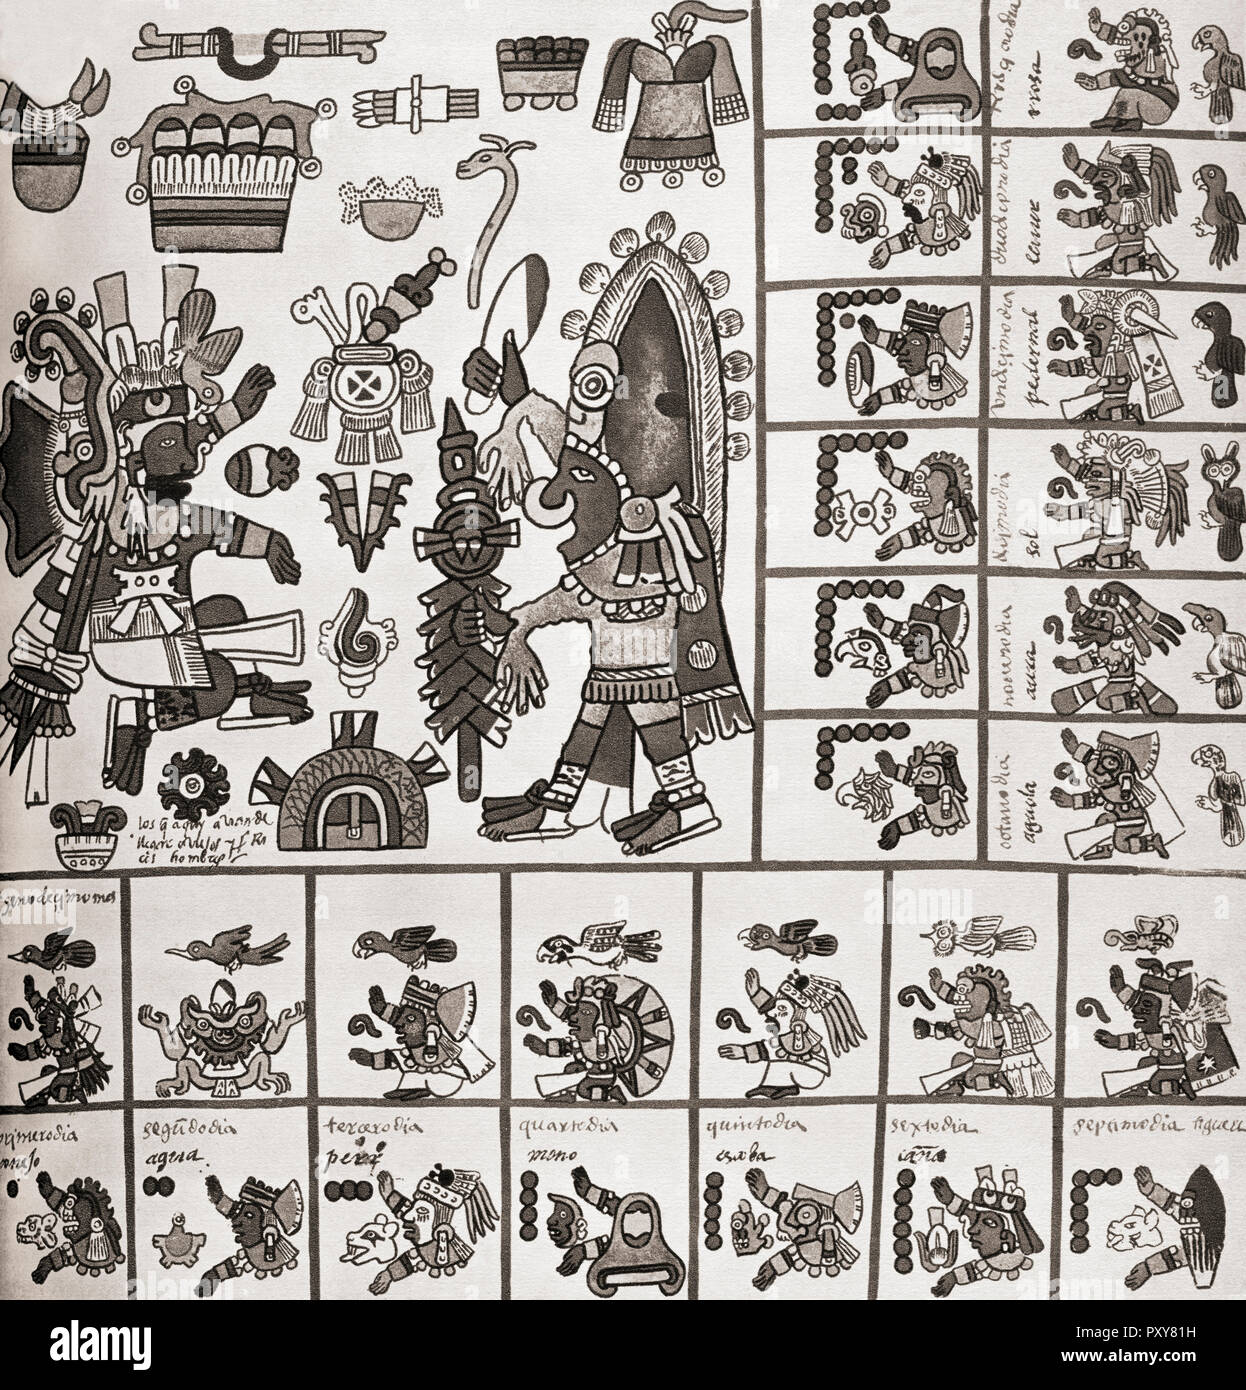 Detalle de una fascimile copia del Codex Borbonicus. El Codex Borbonicus es un códice Azteca escrito por sacerdotes Azteca poco antes o poco después de la conquista española de México en el siglo XVI. Foto de stock